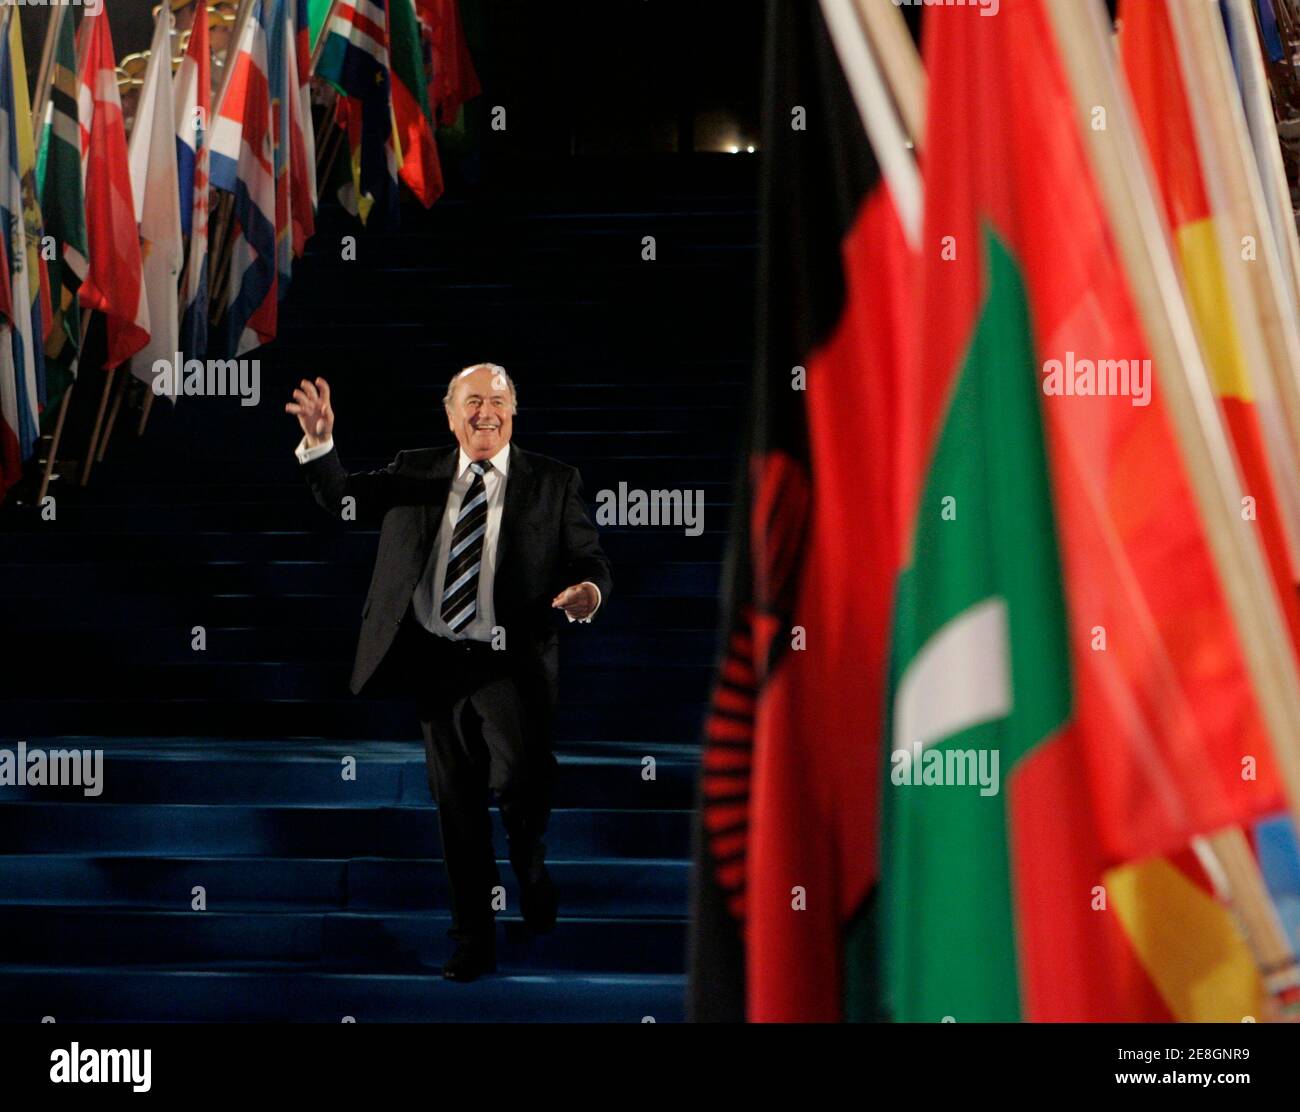 FIFA-Präsident Sepp Blatter winkt den Medien zu, nachdem er die Eröffnungszeremonie des 58. FIFA-Kongresses im Opernhaus von Sydney am 29. Mai 2008 verlassen hat. REUTERS/will Burgess (AUSTRALIEN) Stockfoto